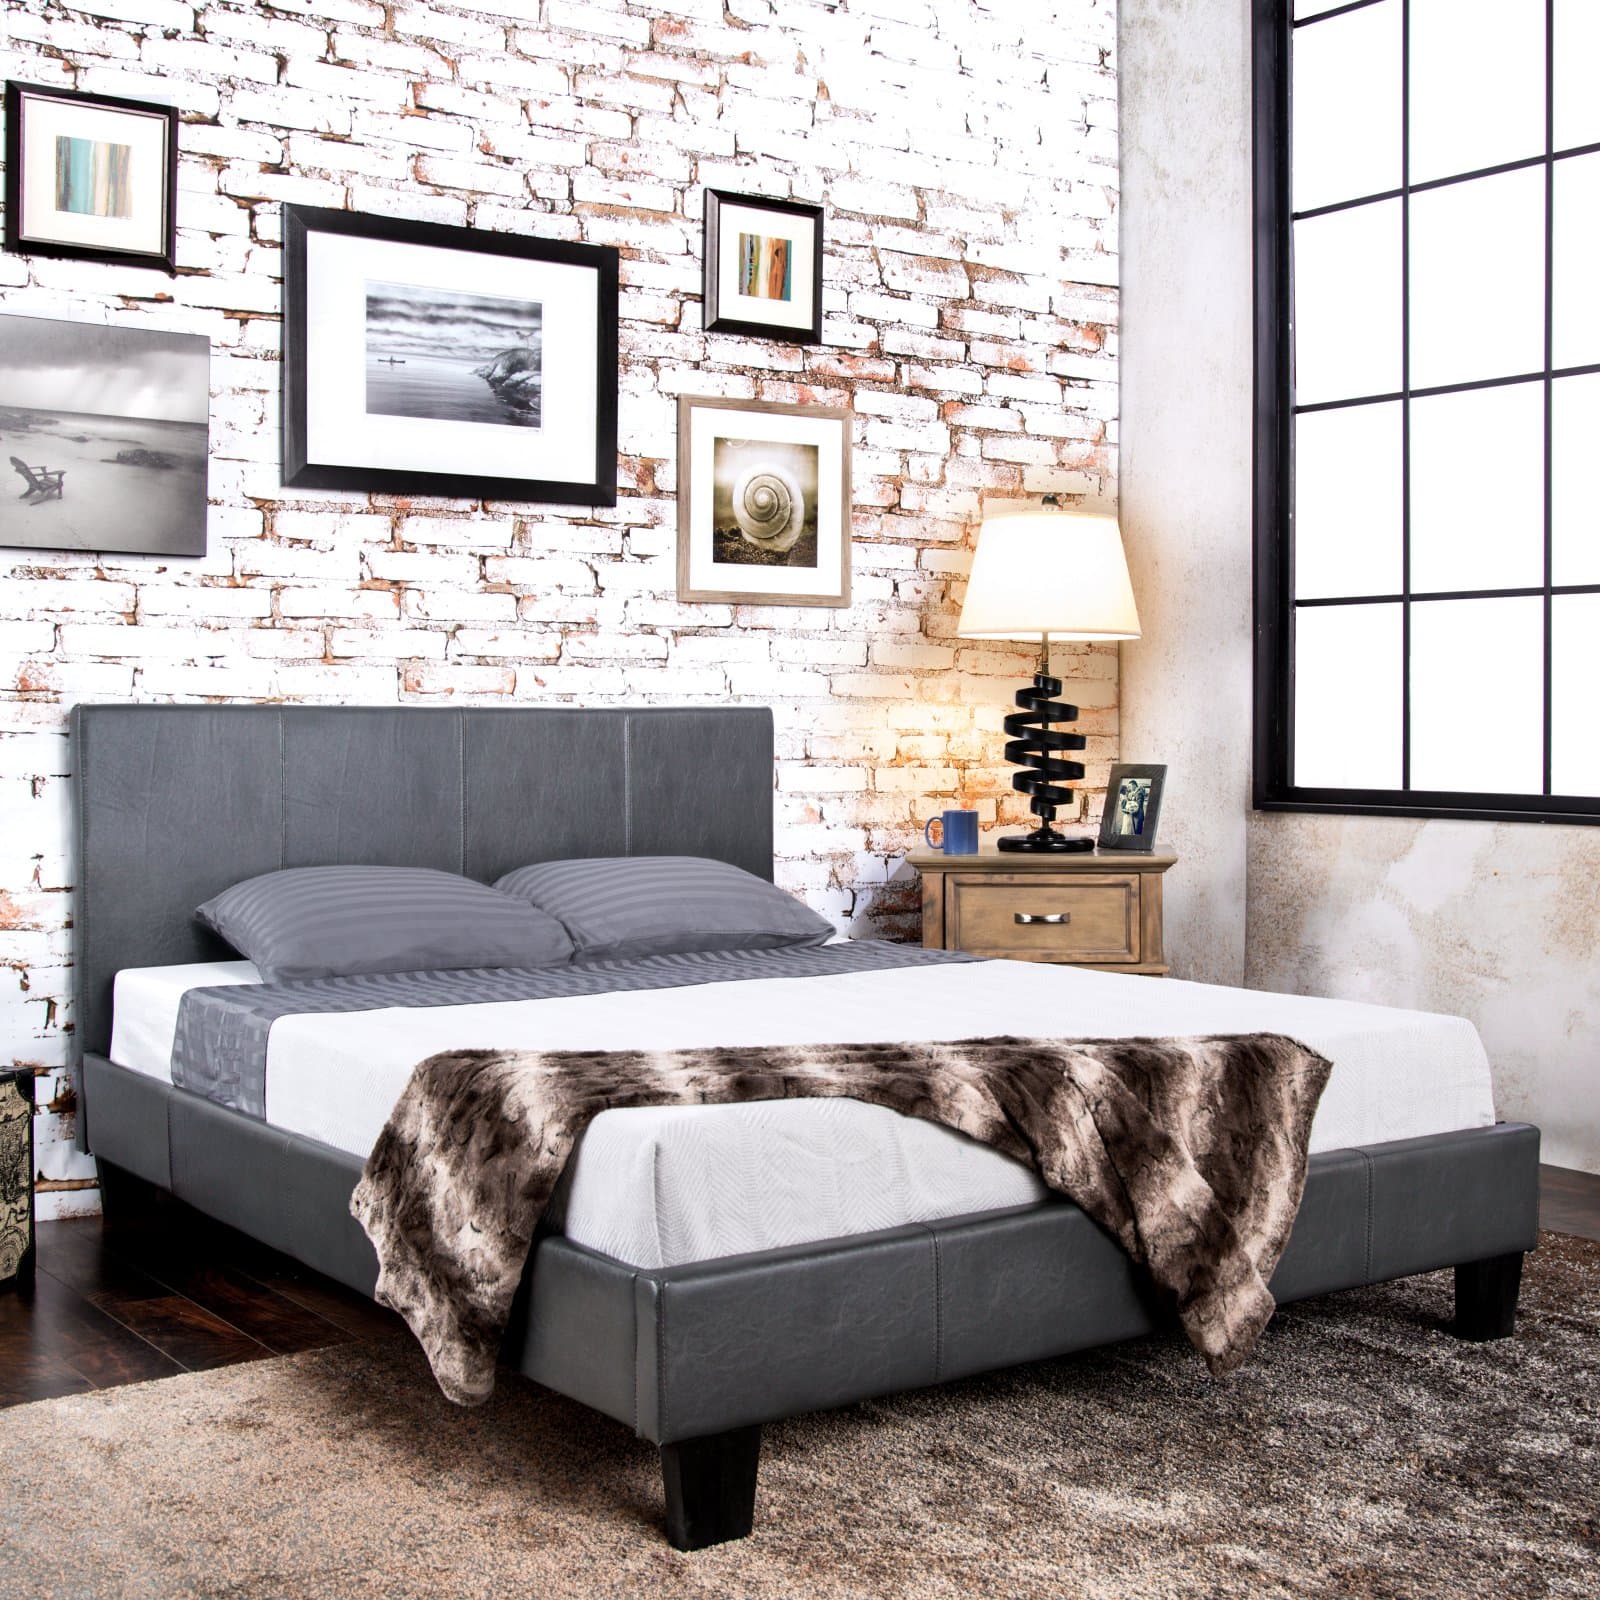 Furniture of America Ridgecrest Platform Bed - image 3 of 10